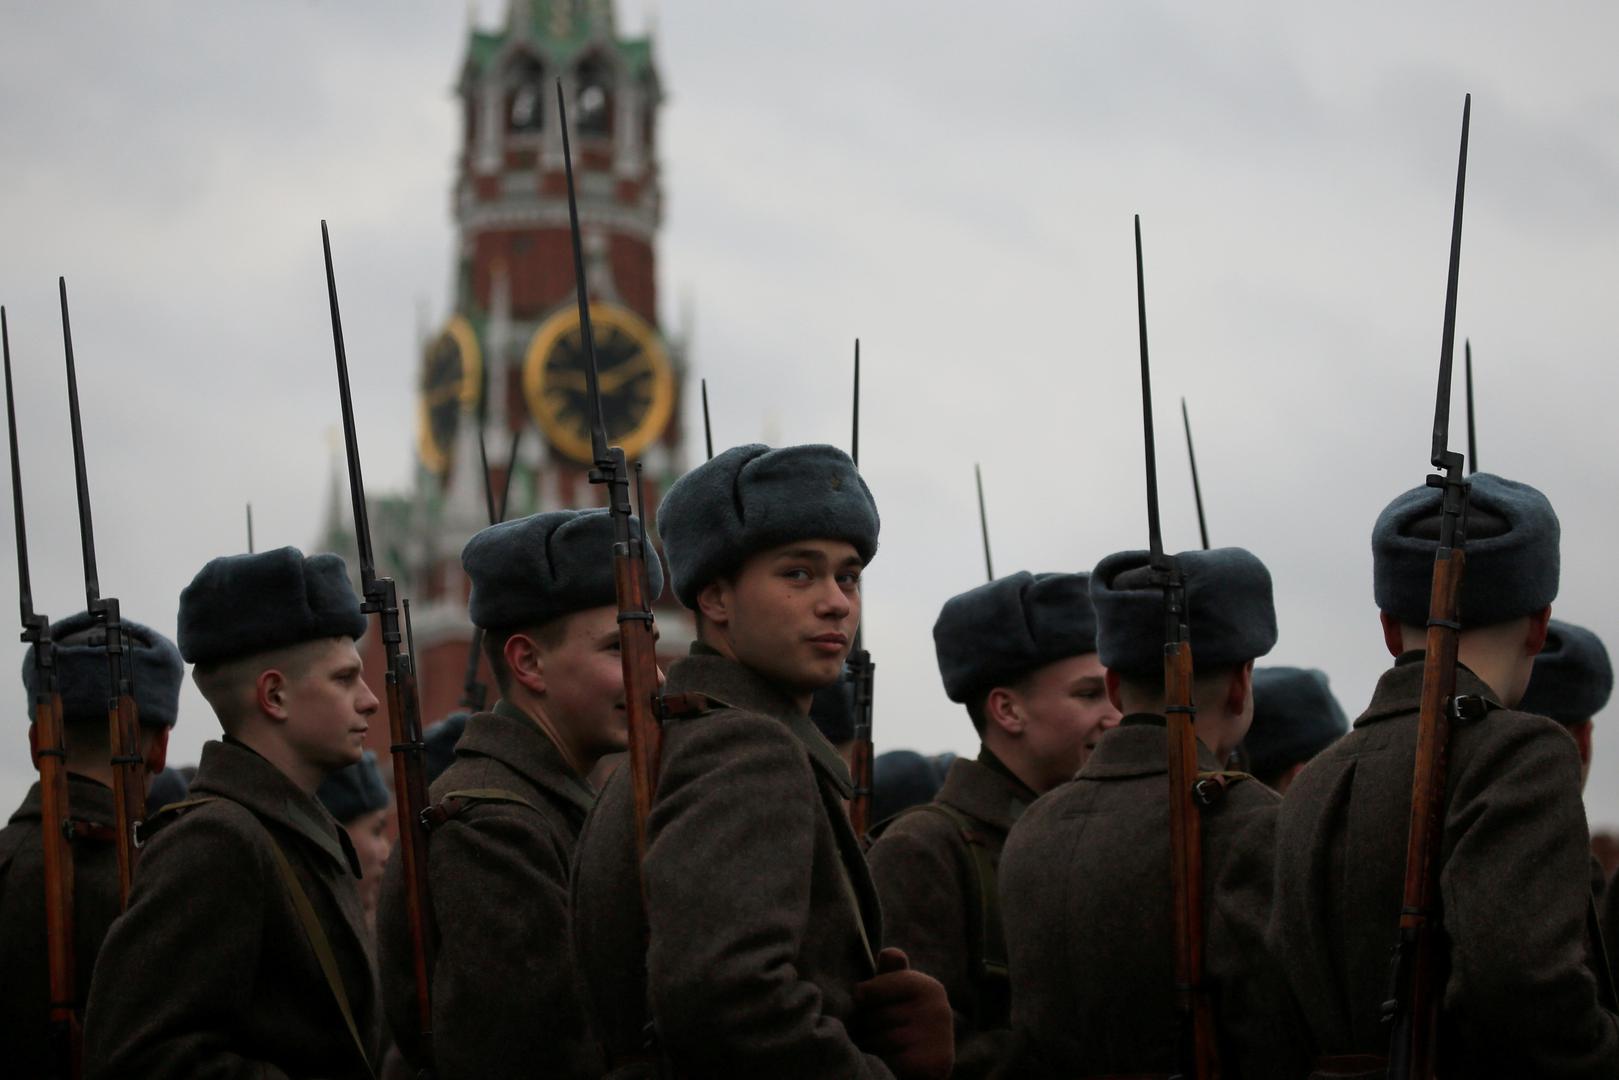 Parada se održava na Crvenom trgu, a vojnici su obučeni u uniforme iz Drugog svjetskog rata.